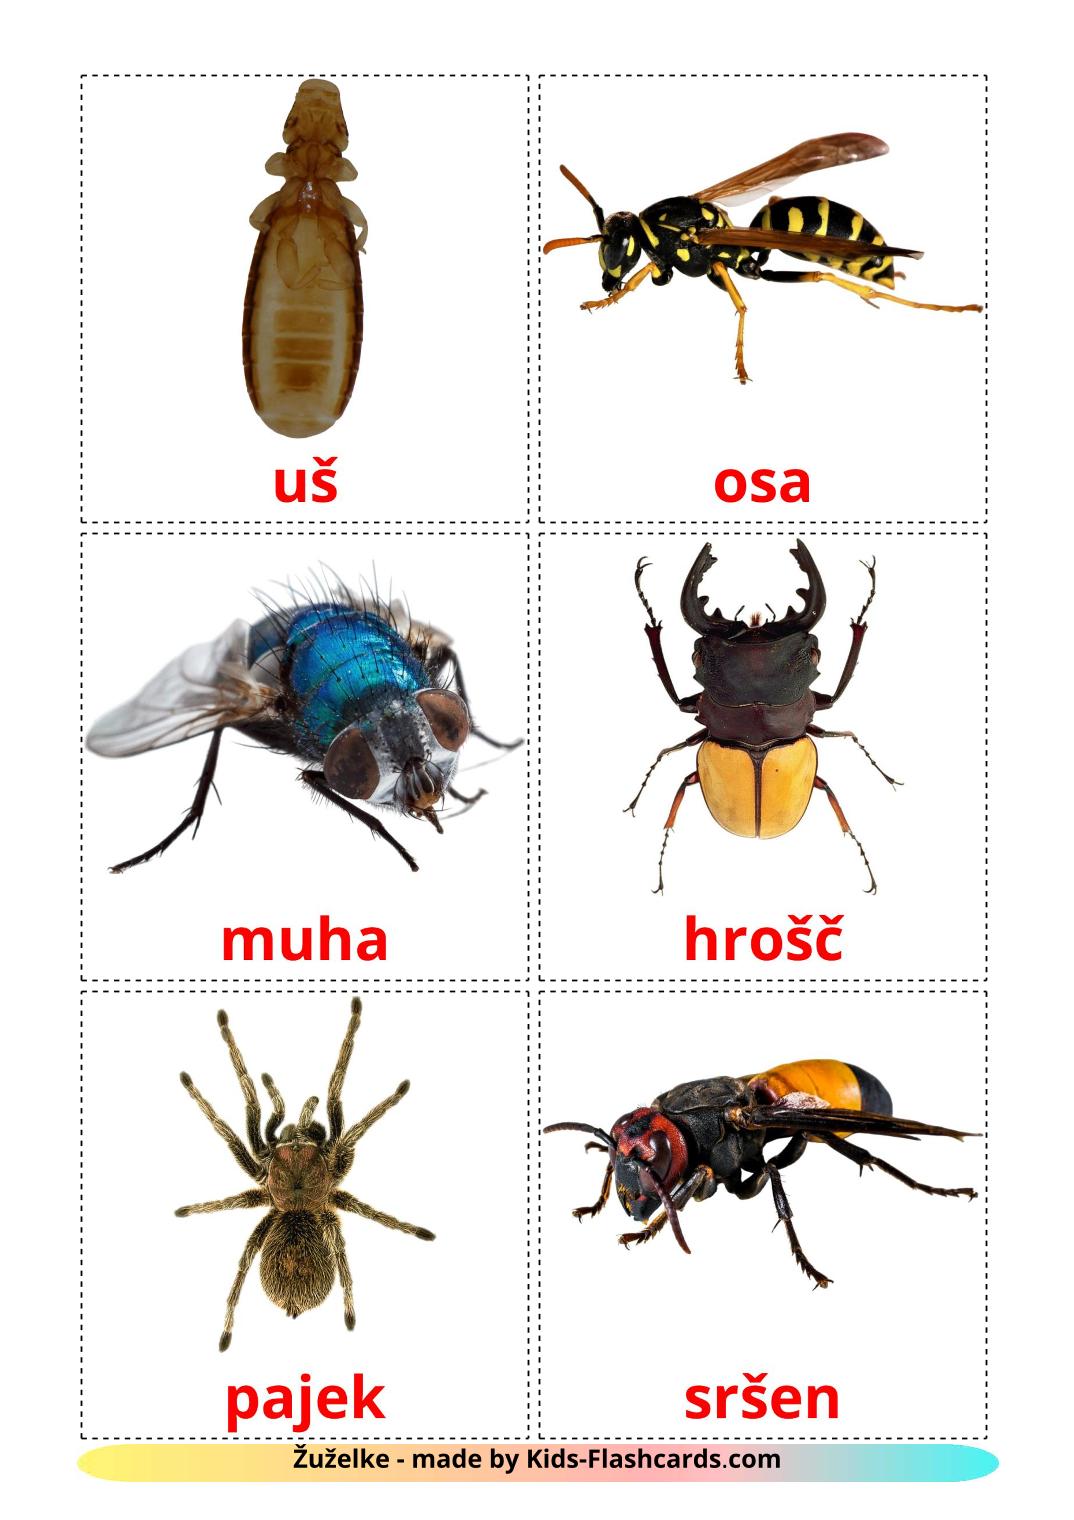 Les Insectes - 23 Flashcards slovène imprimables gratuitement